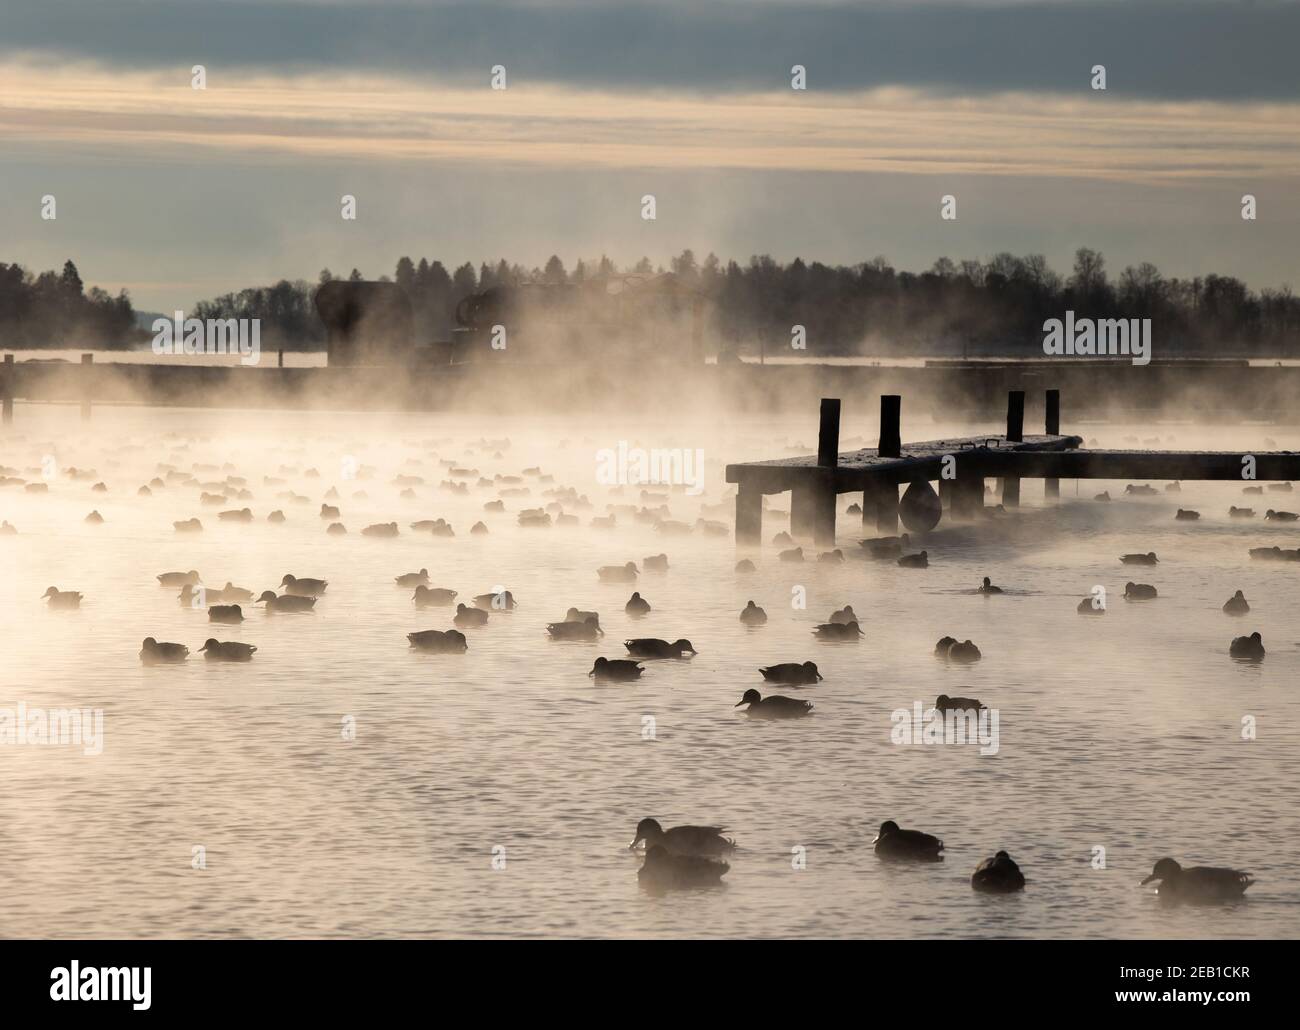 Ducks in the morning fog Stock Photo